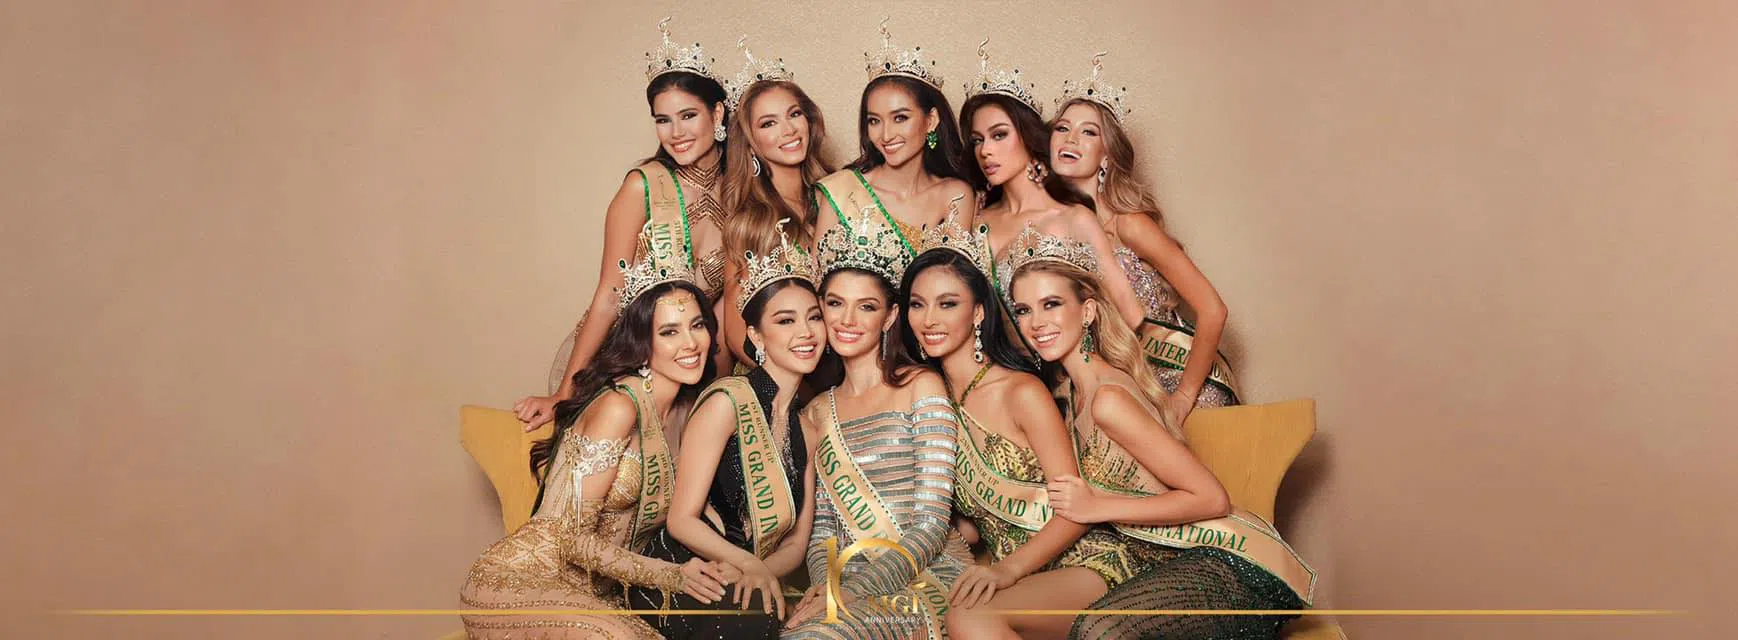 Sau Engfa, thêm người đẹp gây tranh cãi vì làm mất giá trị  của Miss Grand International